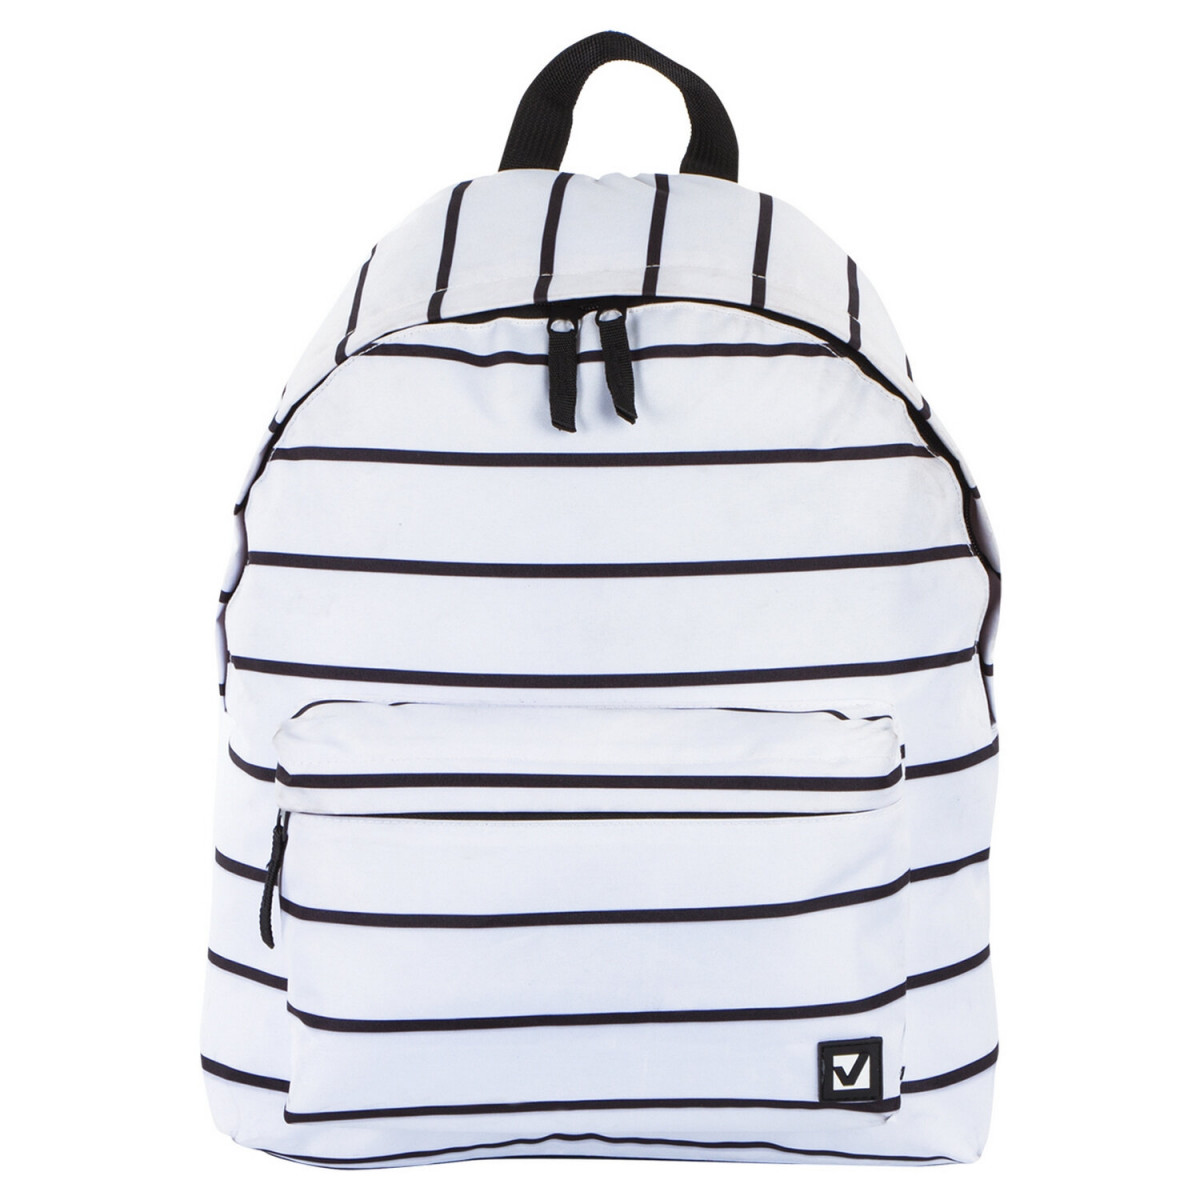 Рюкзак BRAUBERG, универсальный, сити-формат, белый в полоску, 20 литров, 41х32х14 см, 228846 (арт. 228846)